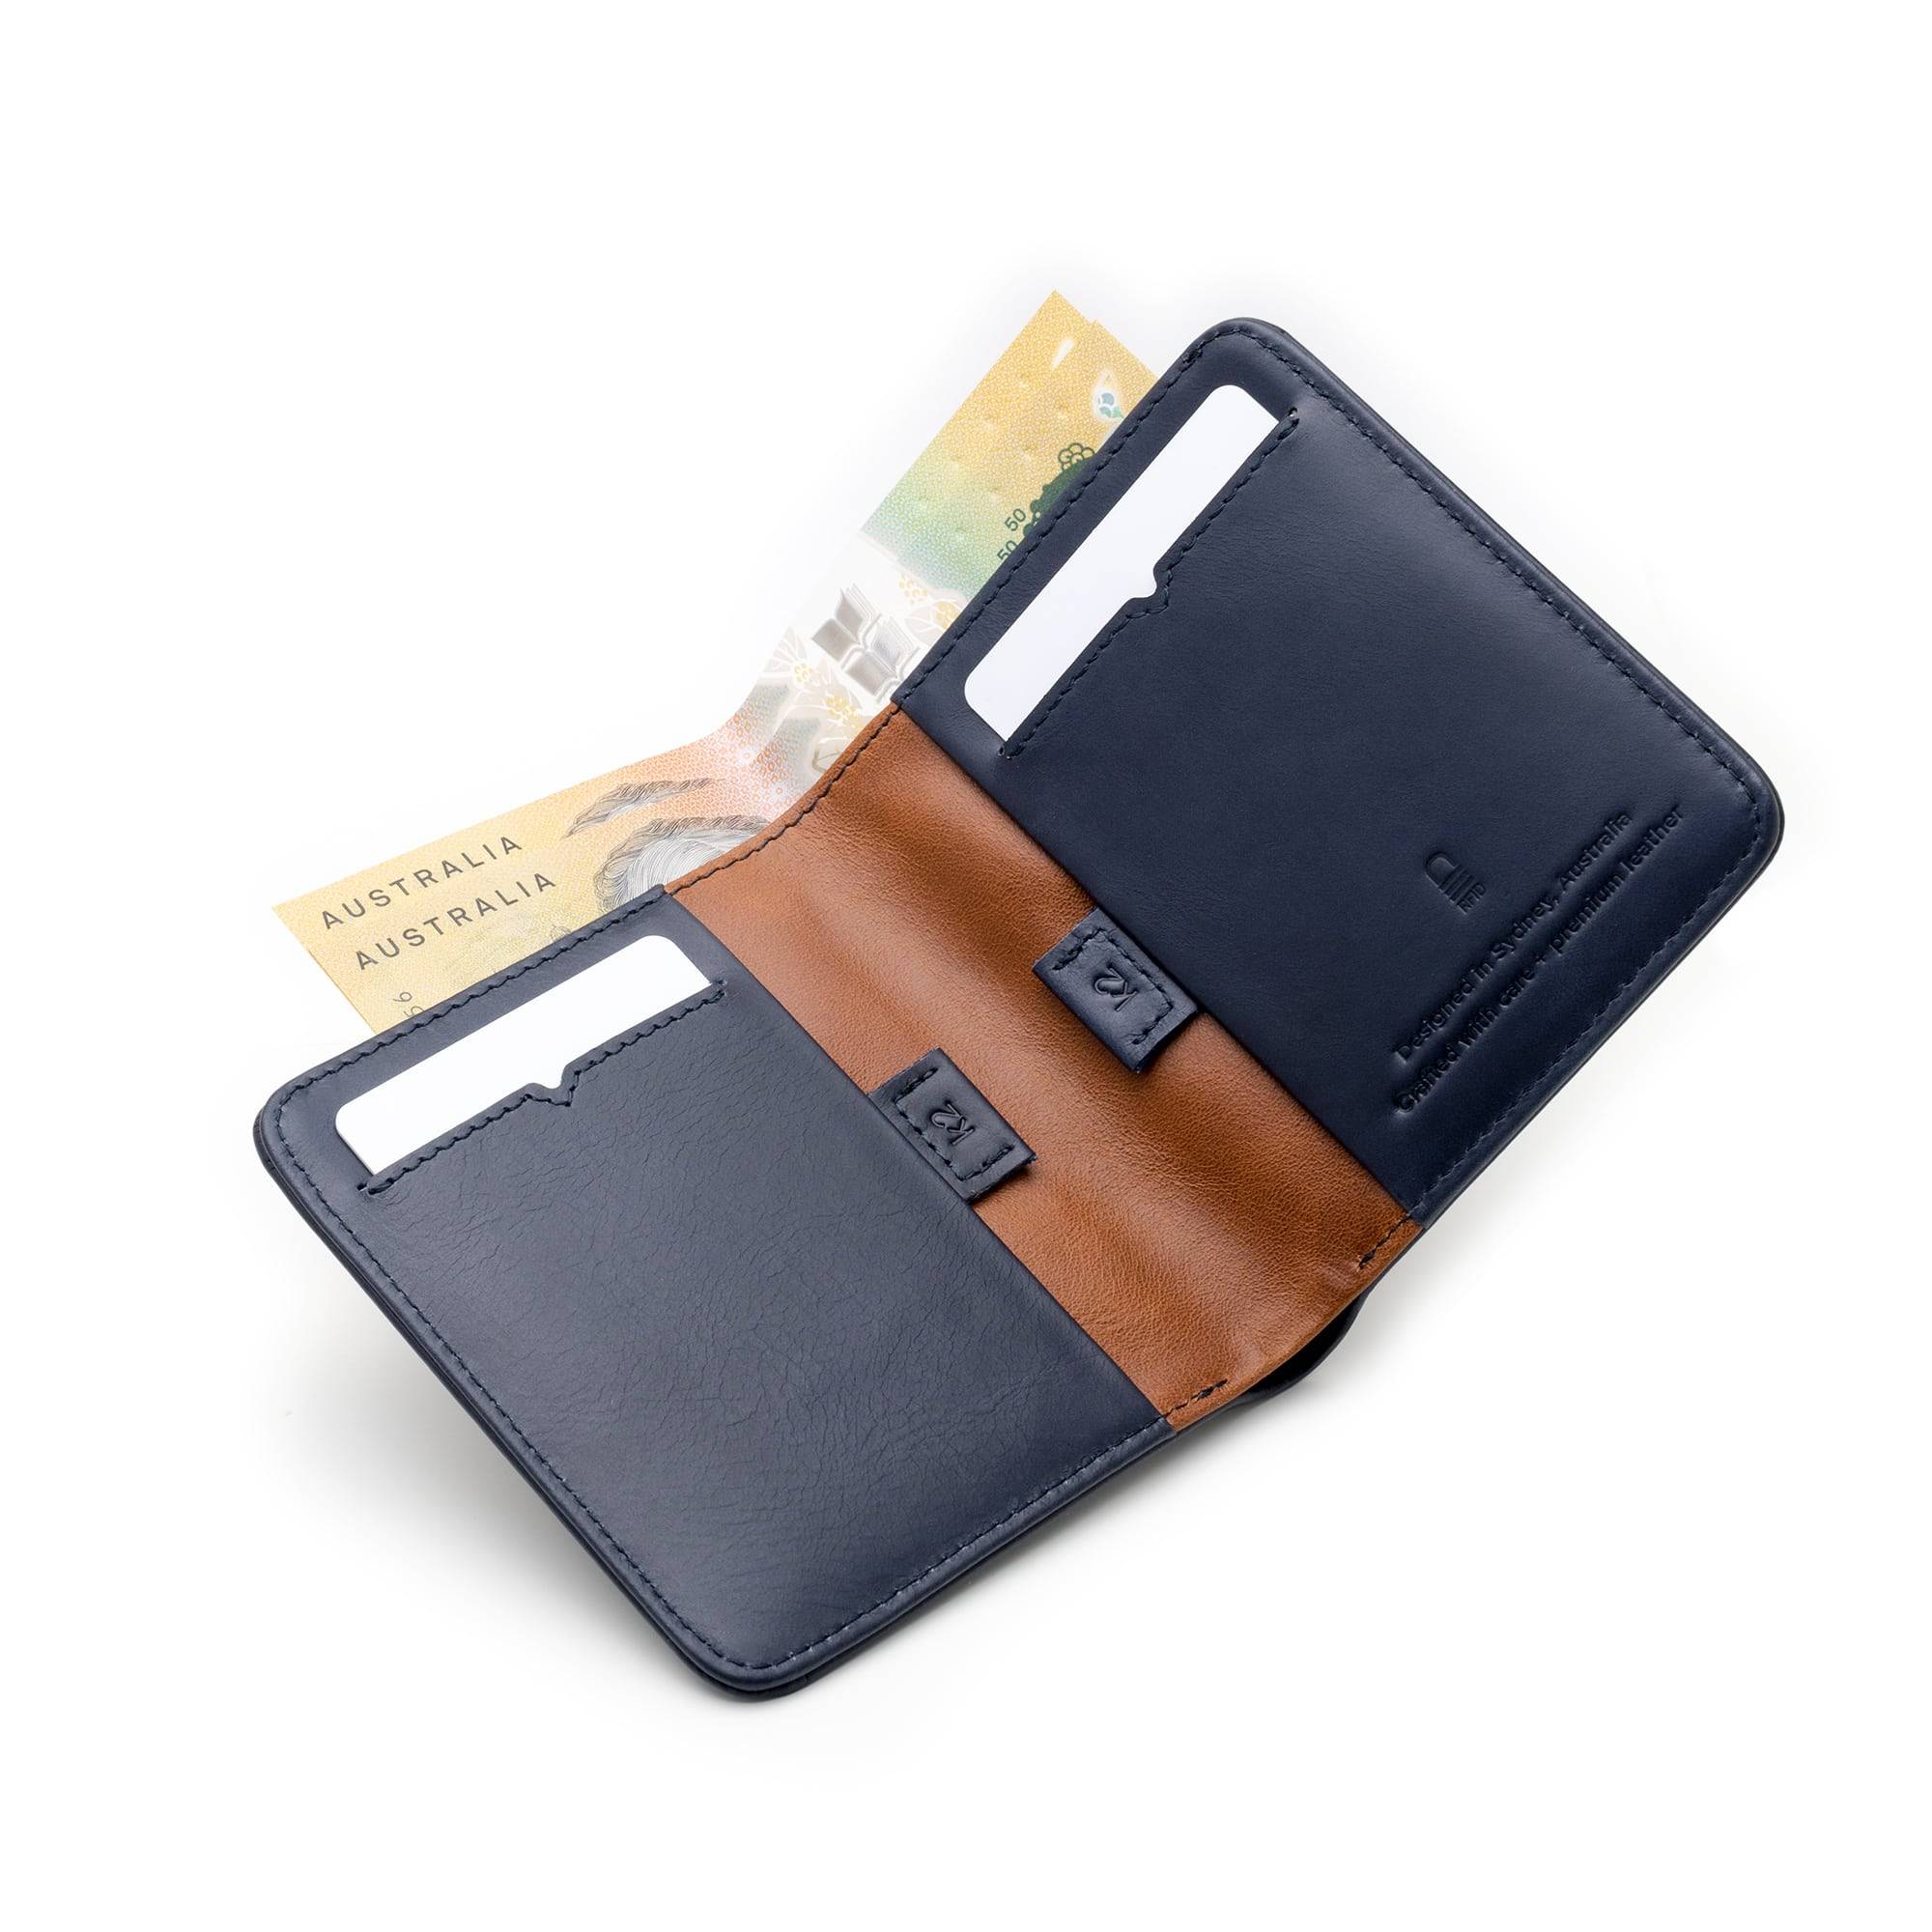 Karakoram2 Australia Slim mens leather wallet bifold rfid with pull tabs